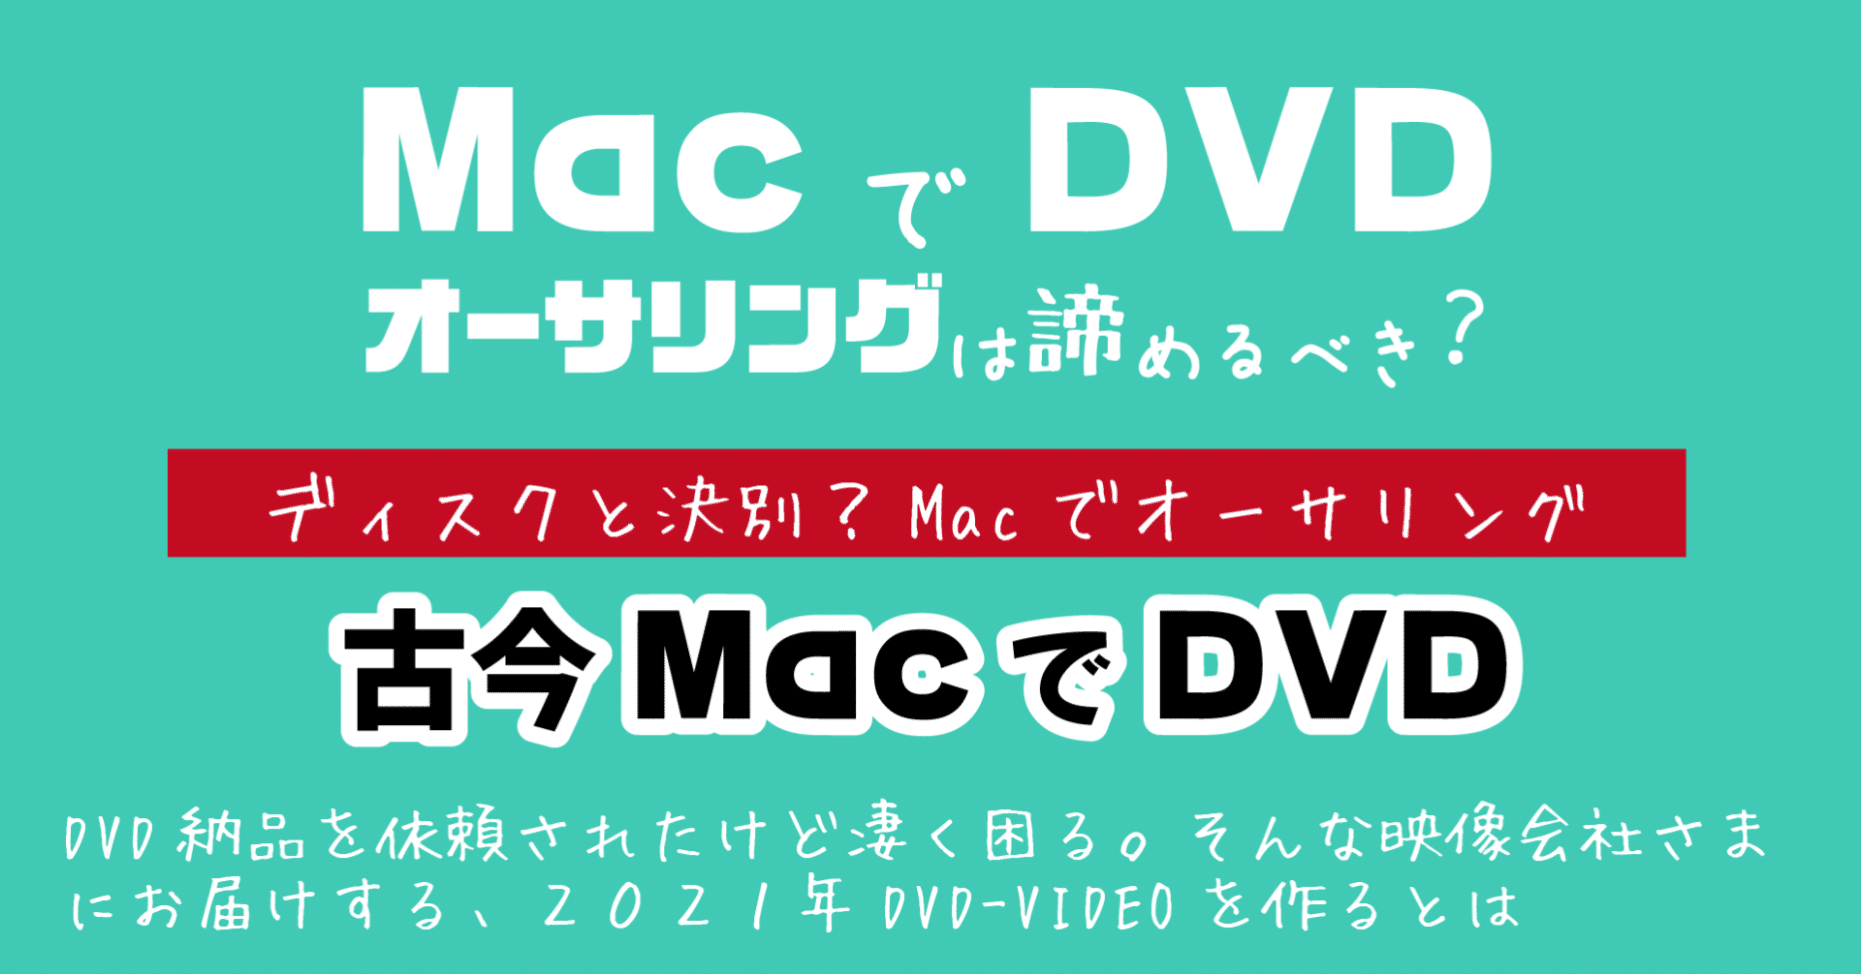 Dvdオーサリング Macでdvd オーサリングは諦めるべき 21 Dvd即日コピー専門店 アイブライト 重蔵の修行部屋 Note